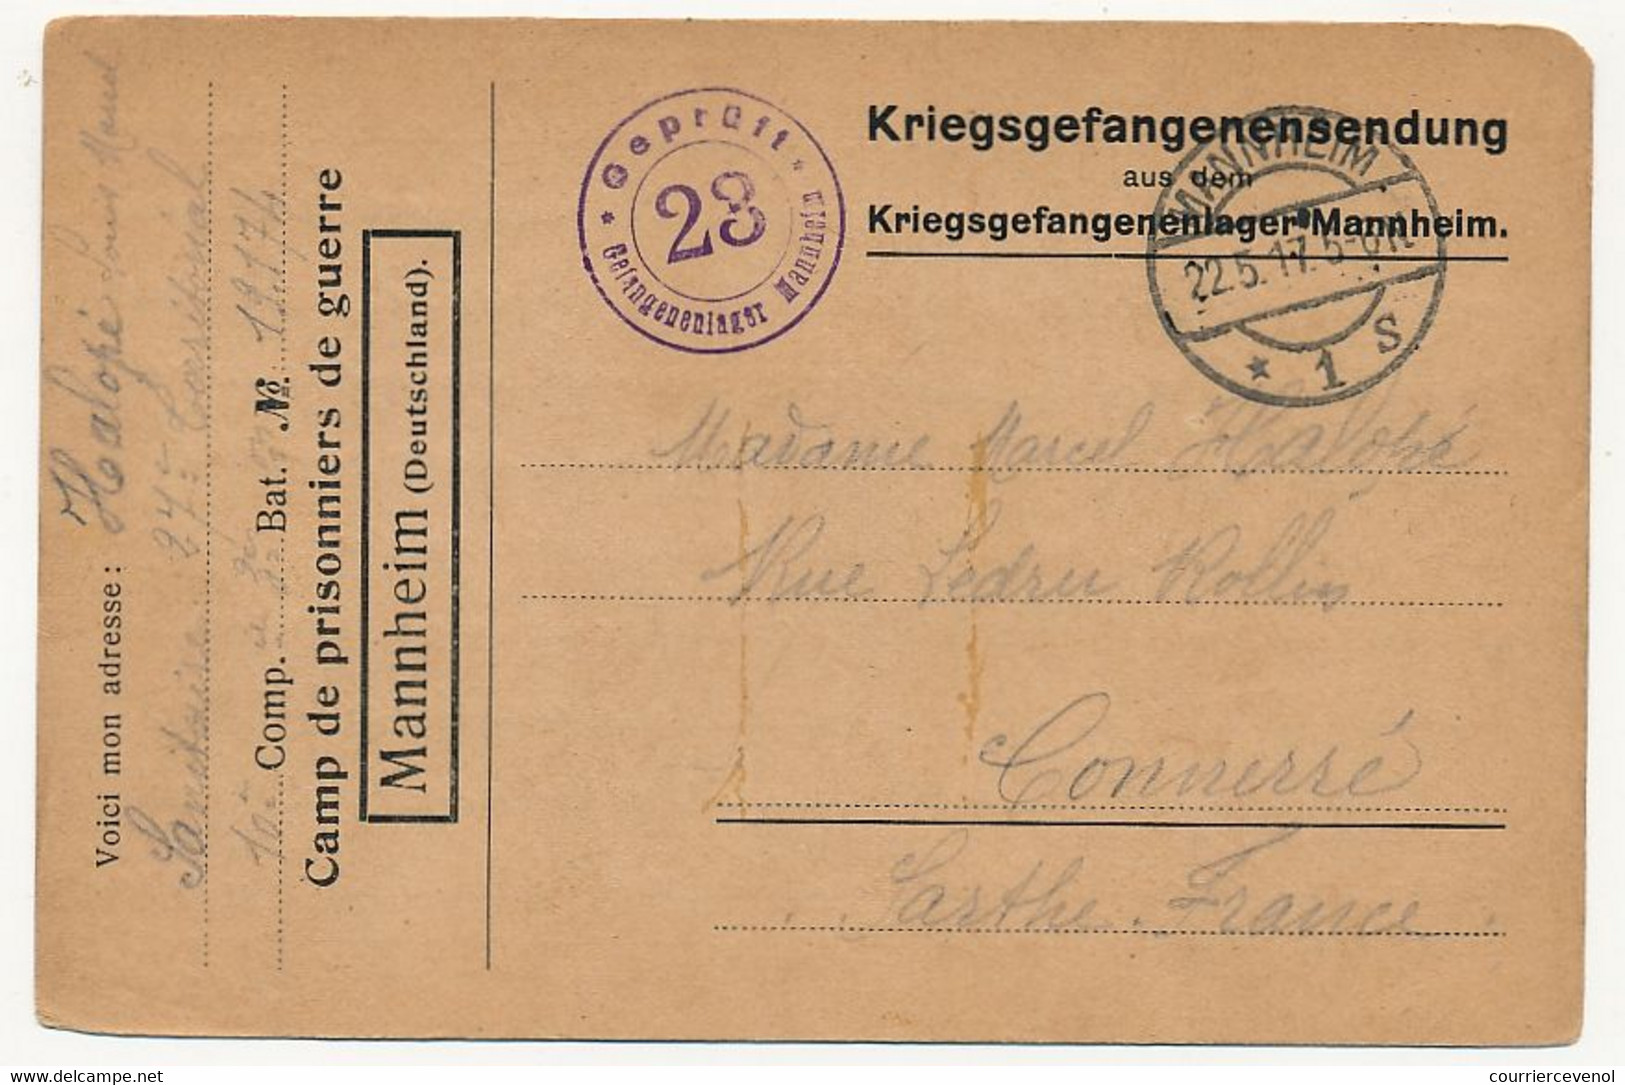 Carte Prisonnier Français - Camp De Mannheim - 22/5/1917 - Censure 28 - WW I